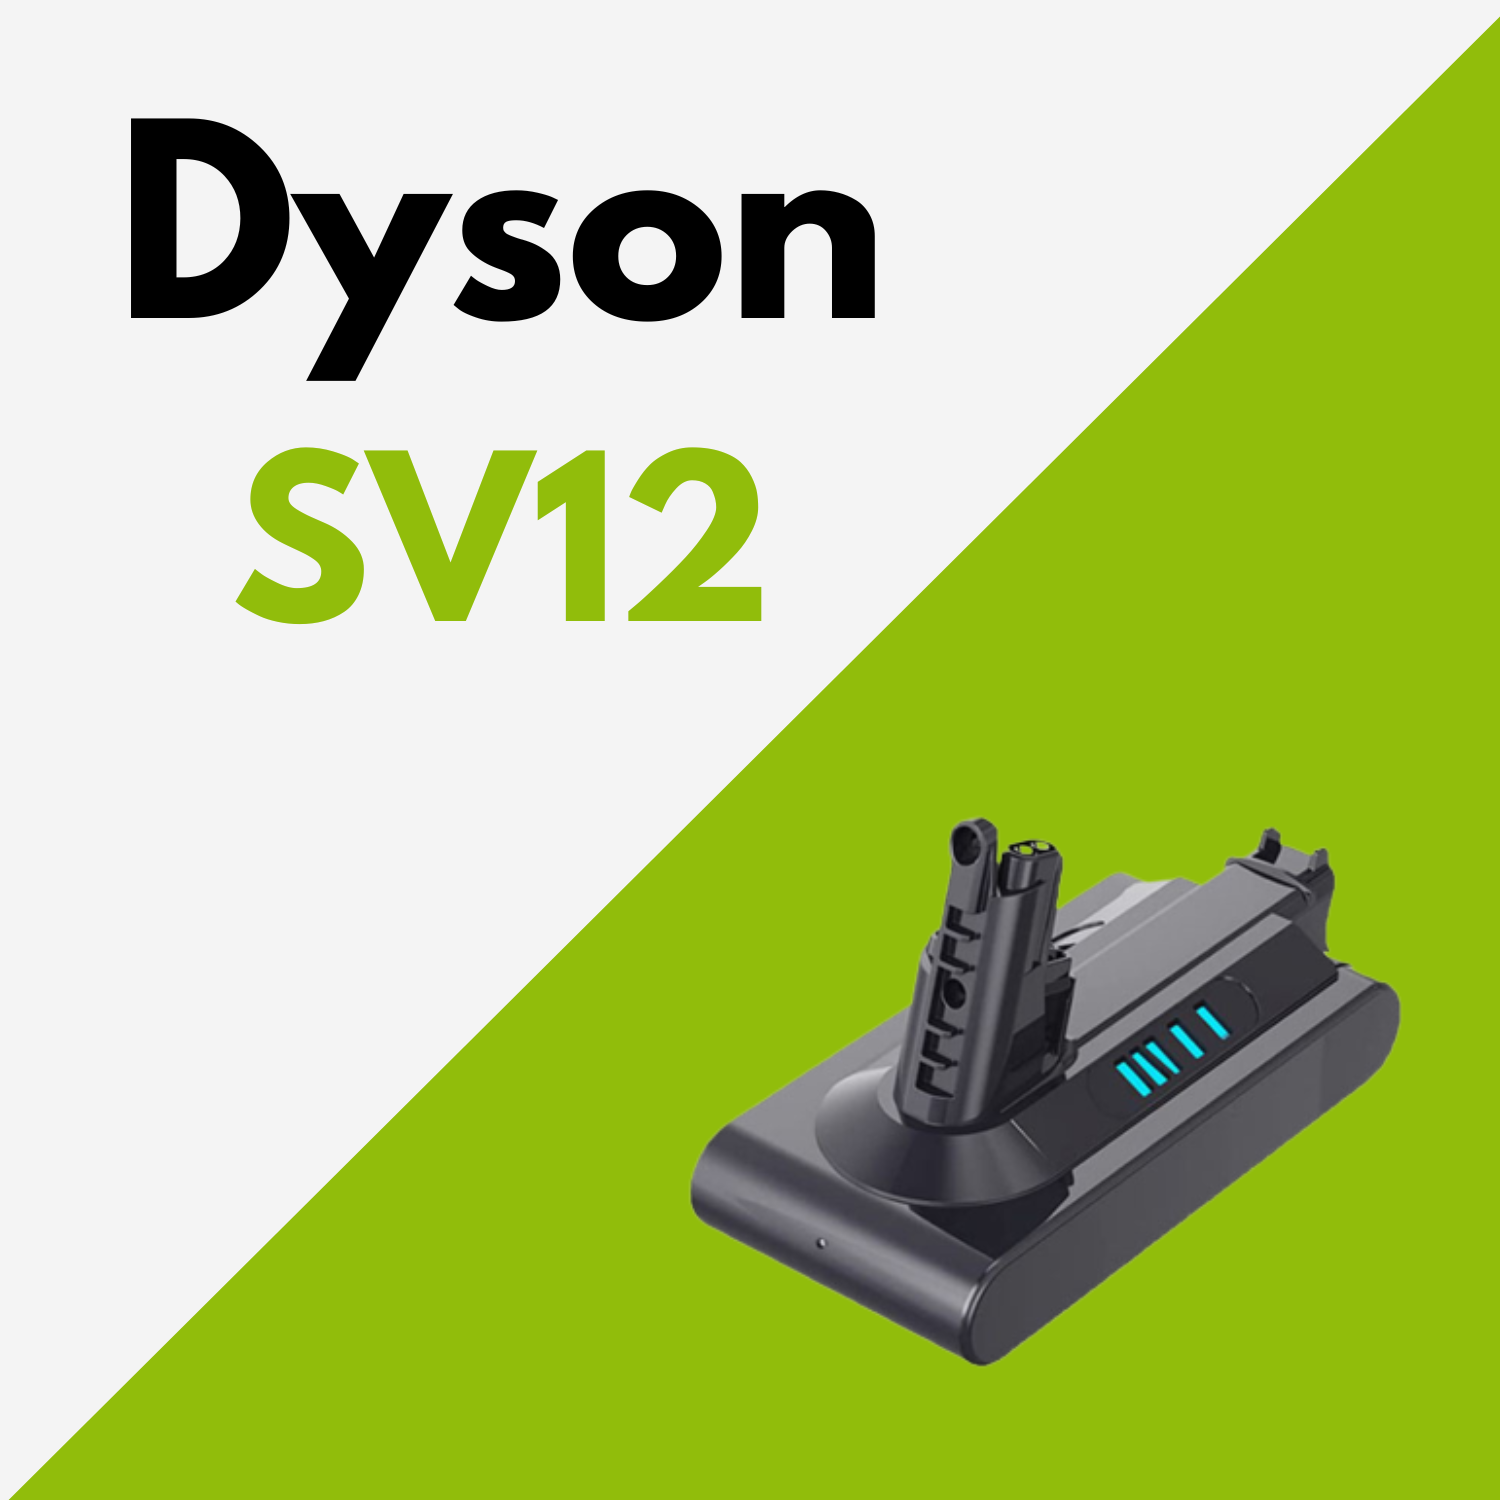 Batterie Dyson SV12 au meilleur prix ! [PROMO]